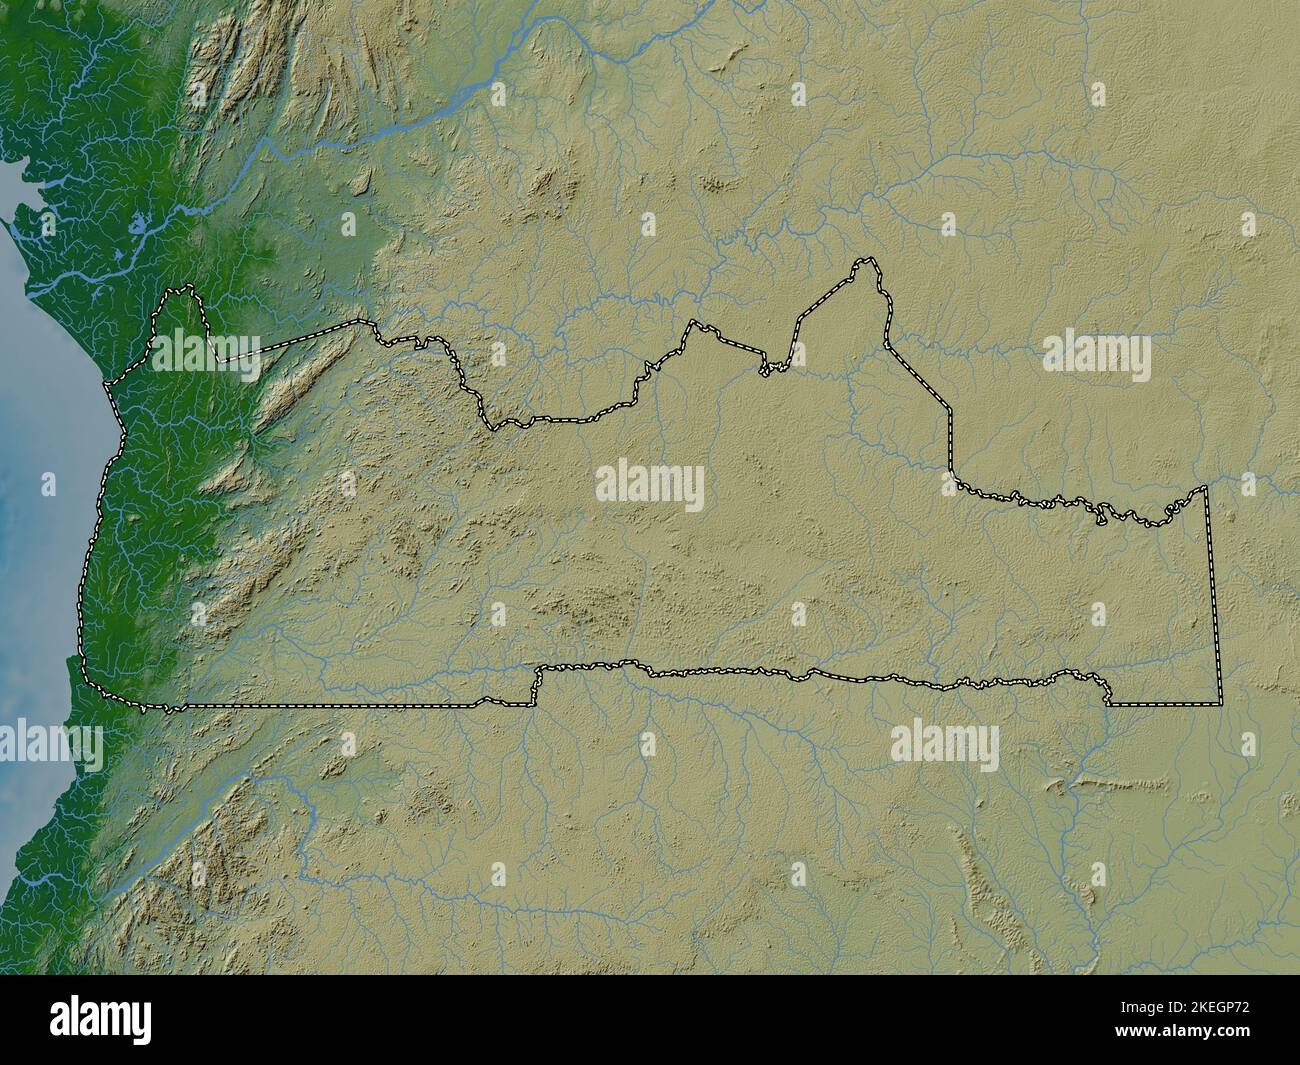 Sud, région du Cameroun. Carte d'altitude en couleur avec lacs et rivières Banque D'Images